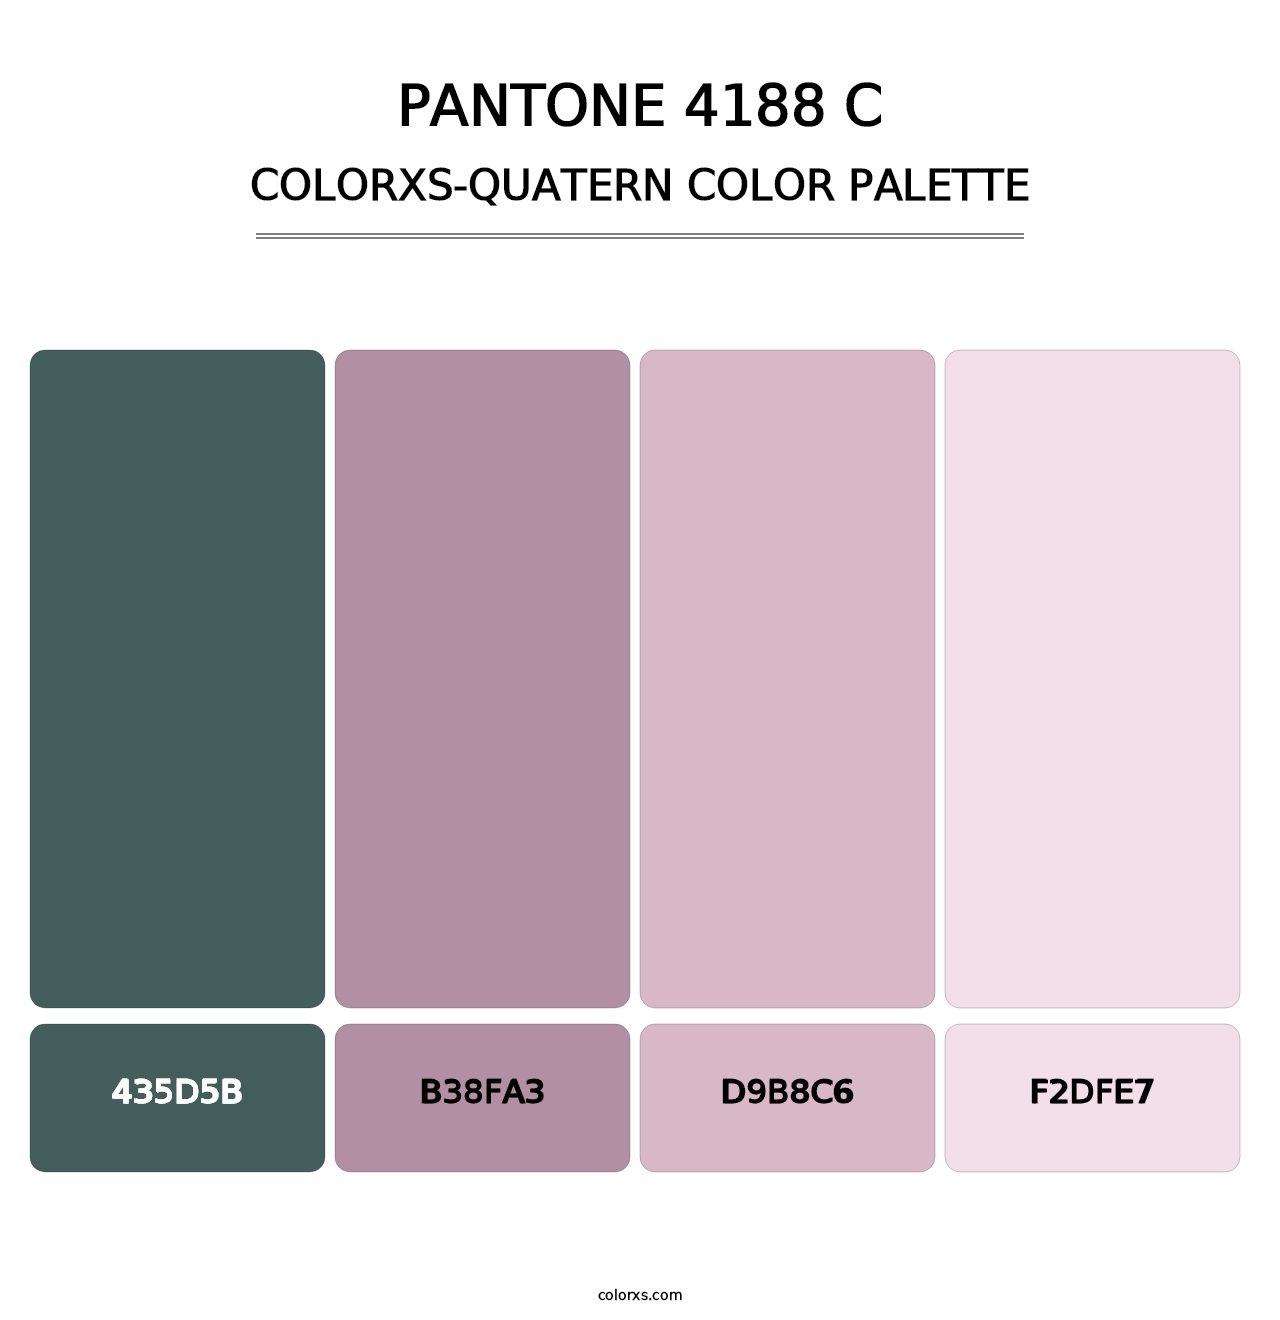 PANTONE 4188 C - Colorxs Quatern Palette